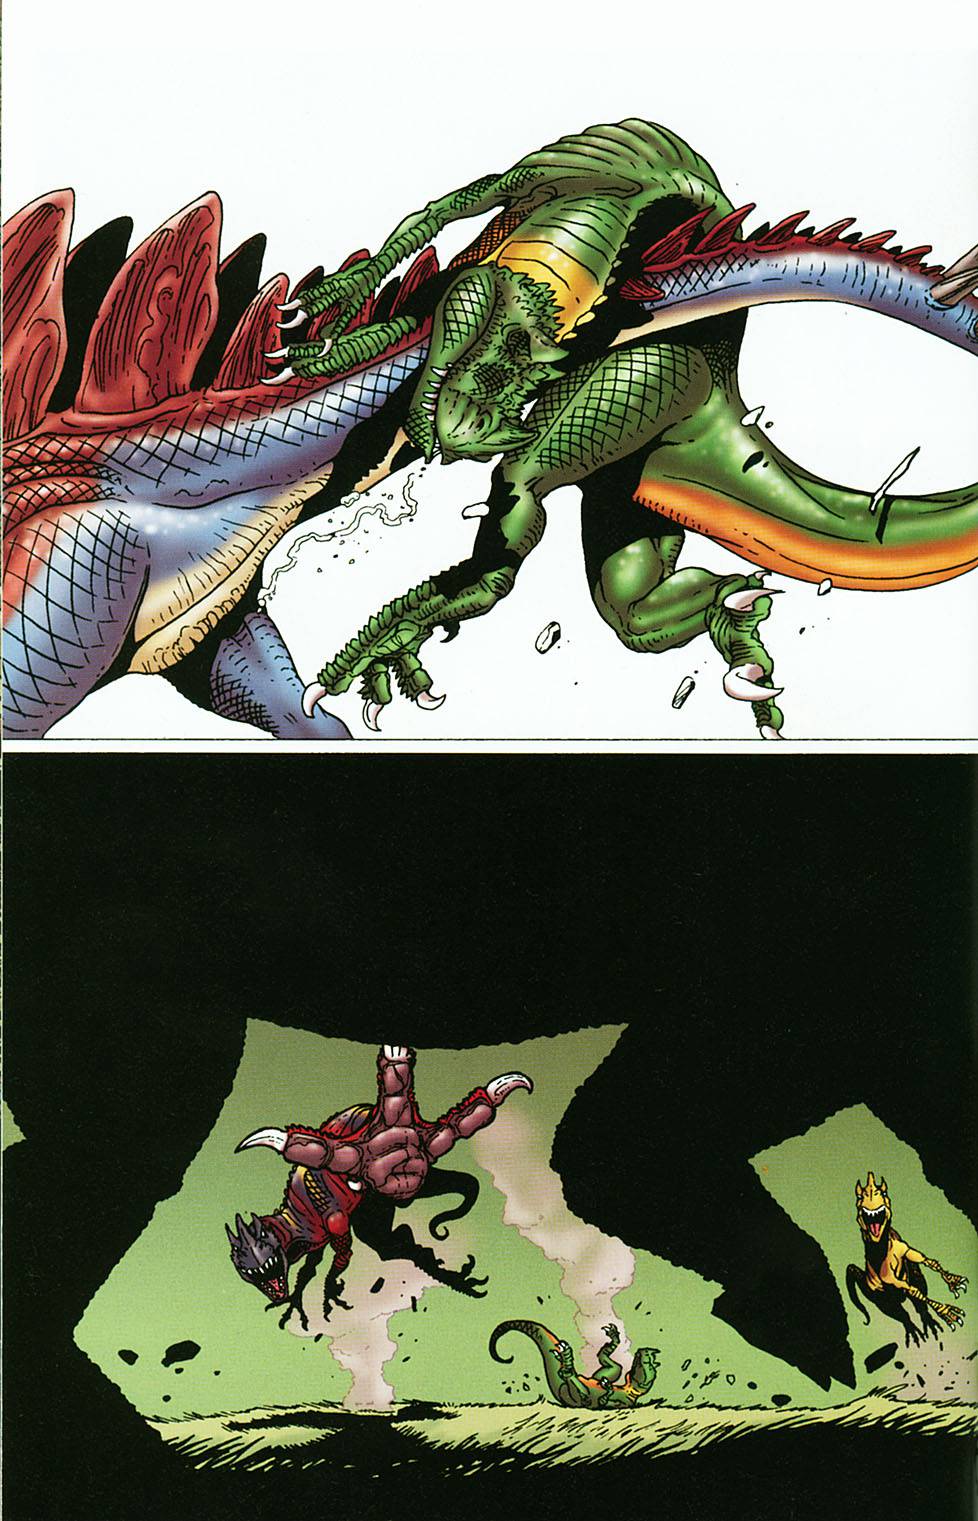 Комиксы про динозавров